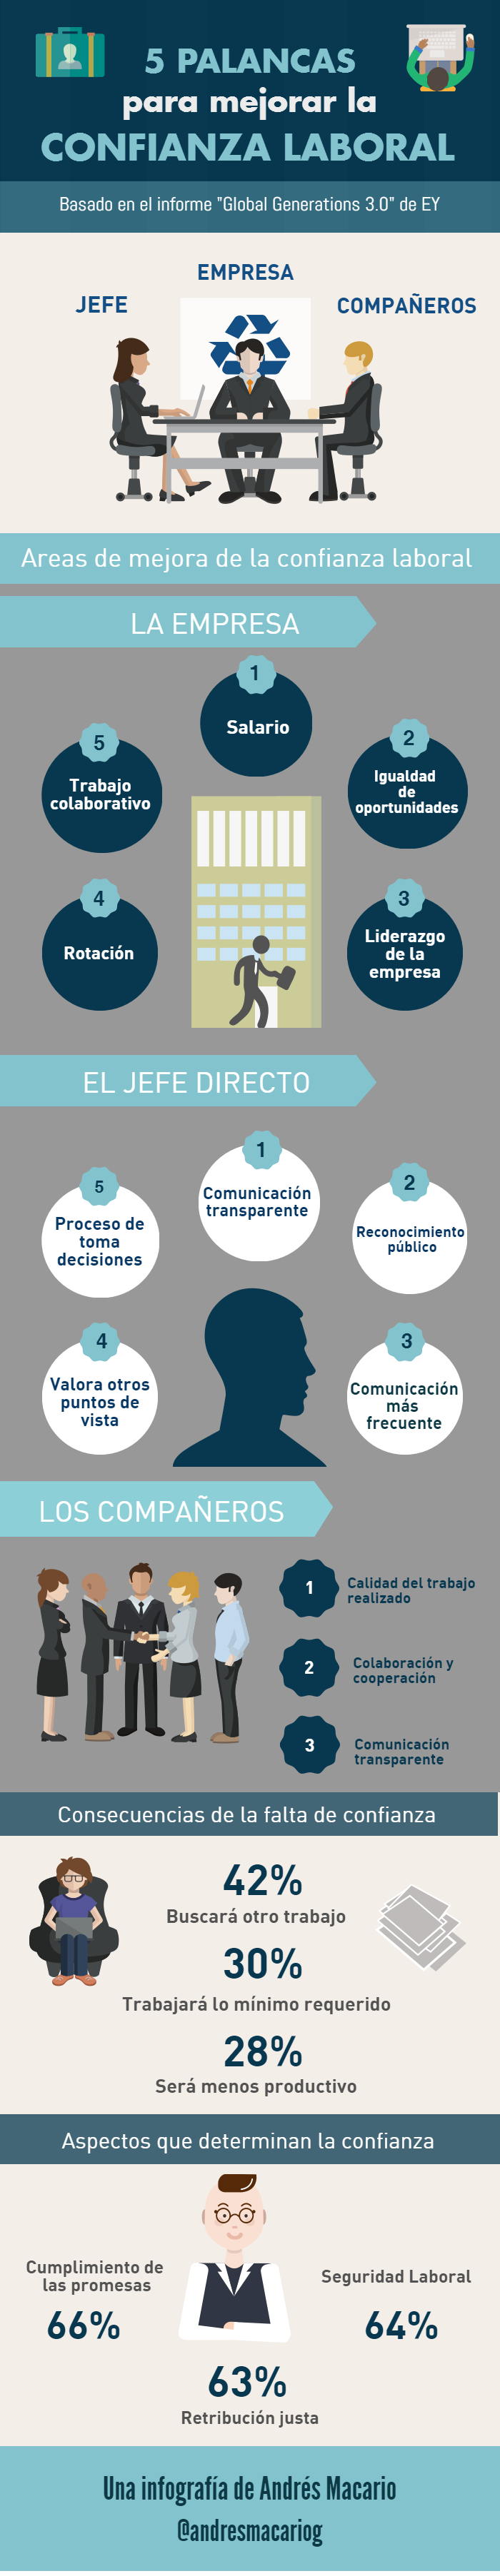 5 palancas para mejorar la confianza laboral - infografia Andres Macario